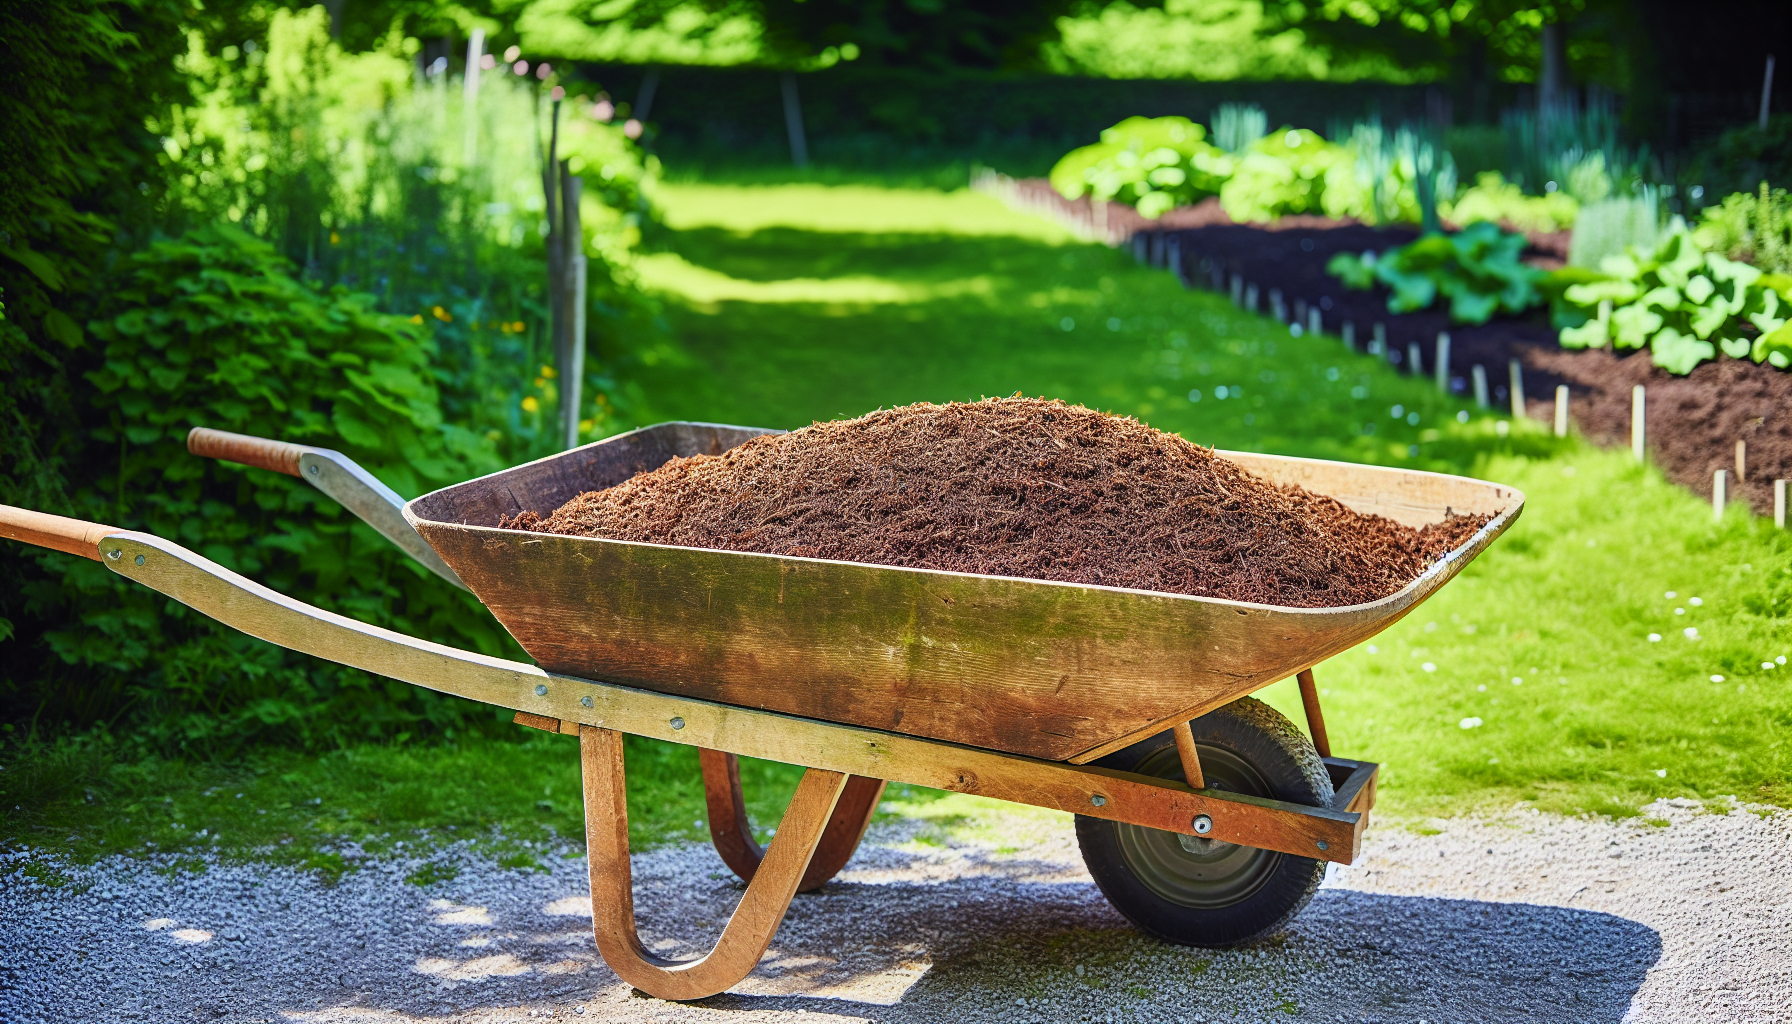 Sifted compost in a garden wheelbarrow